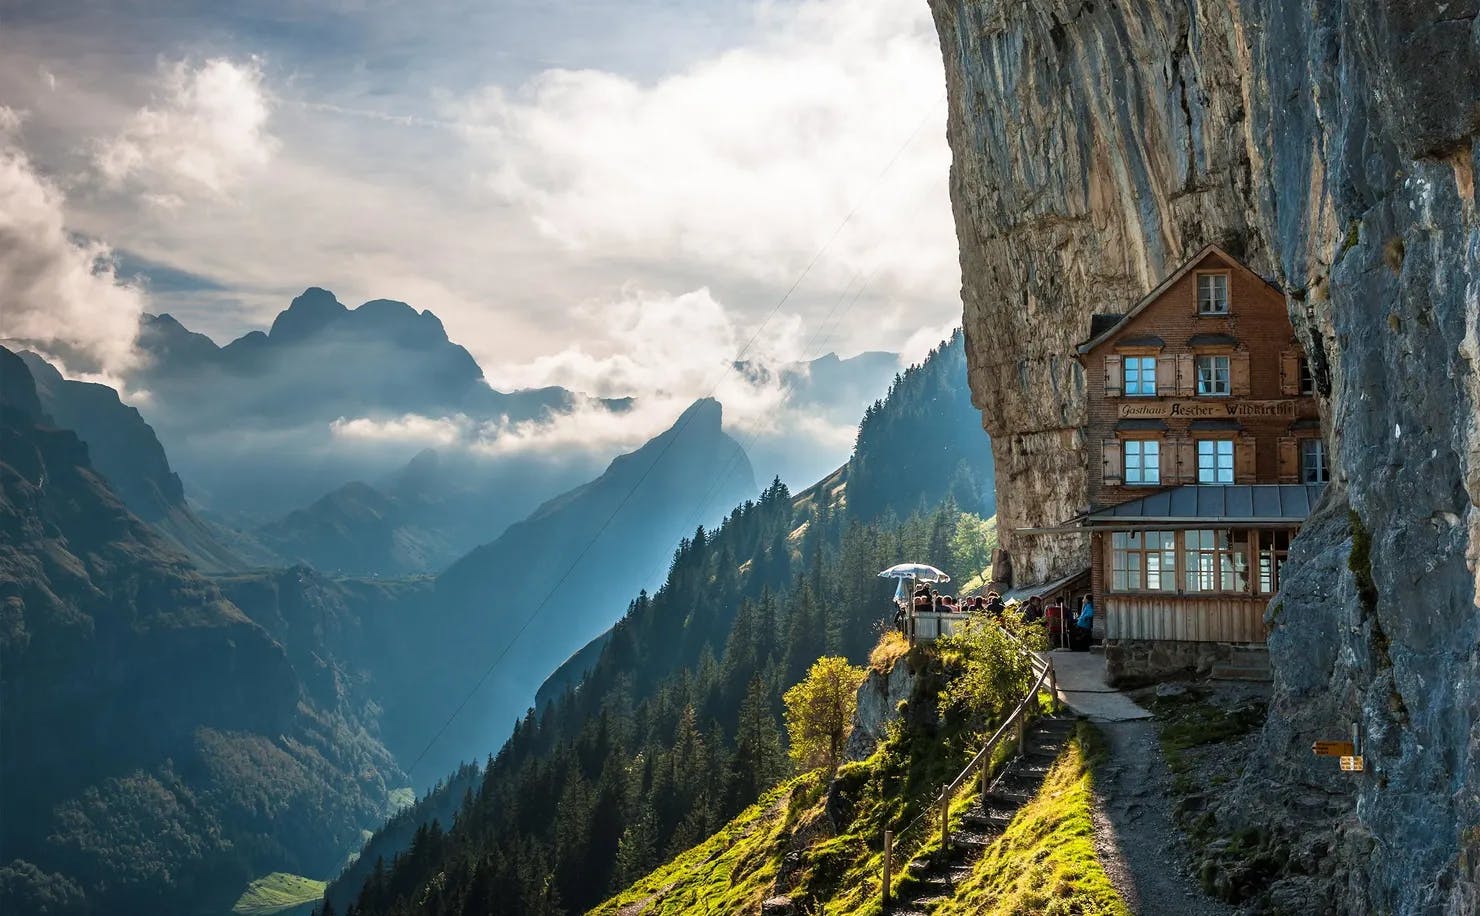 Escher Cliff Hotel in Switzerland